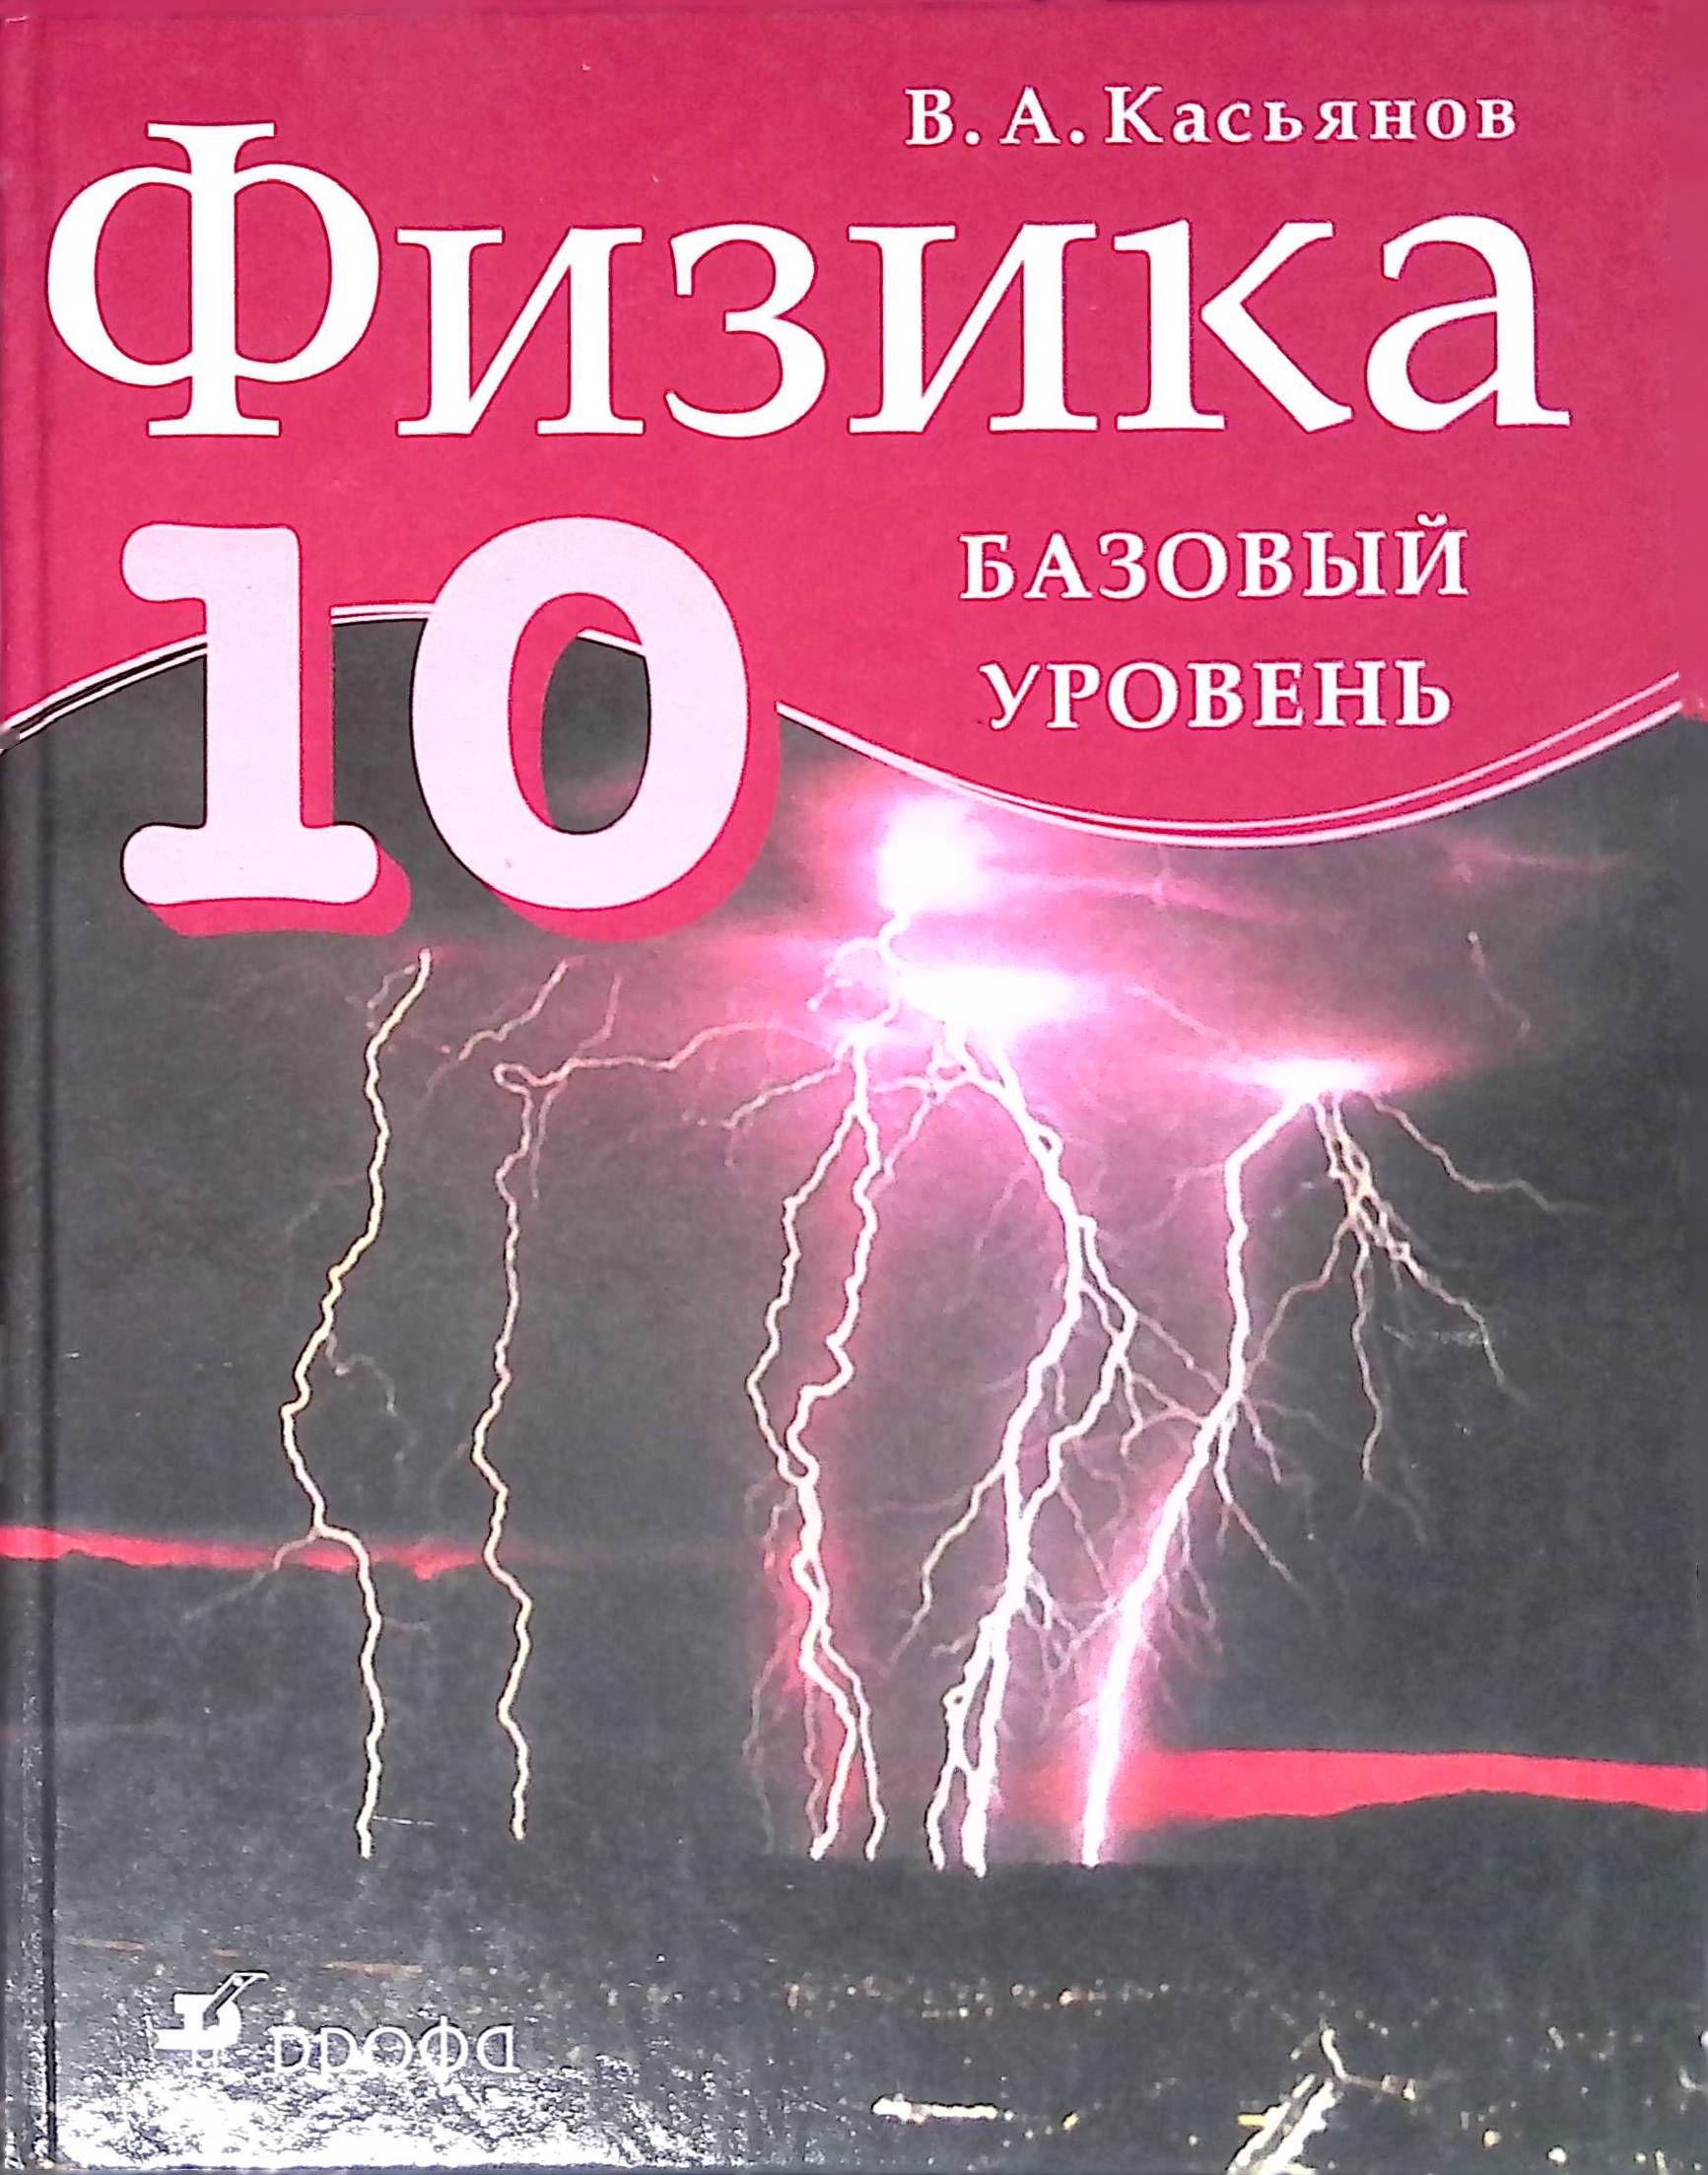 Физика 10 Касьянов базовый уровень. Учебник физики 10-11 класс профильный уровень Касьянов. Учебник по физике 10 класс Касьянов. Физика 10 класс учебник базовый уровень.